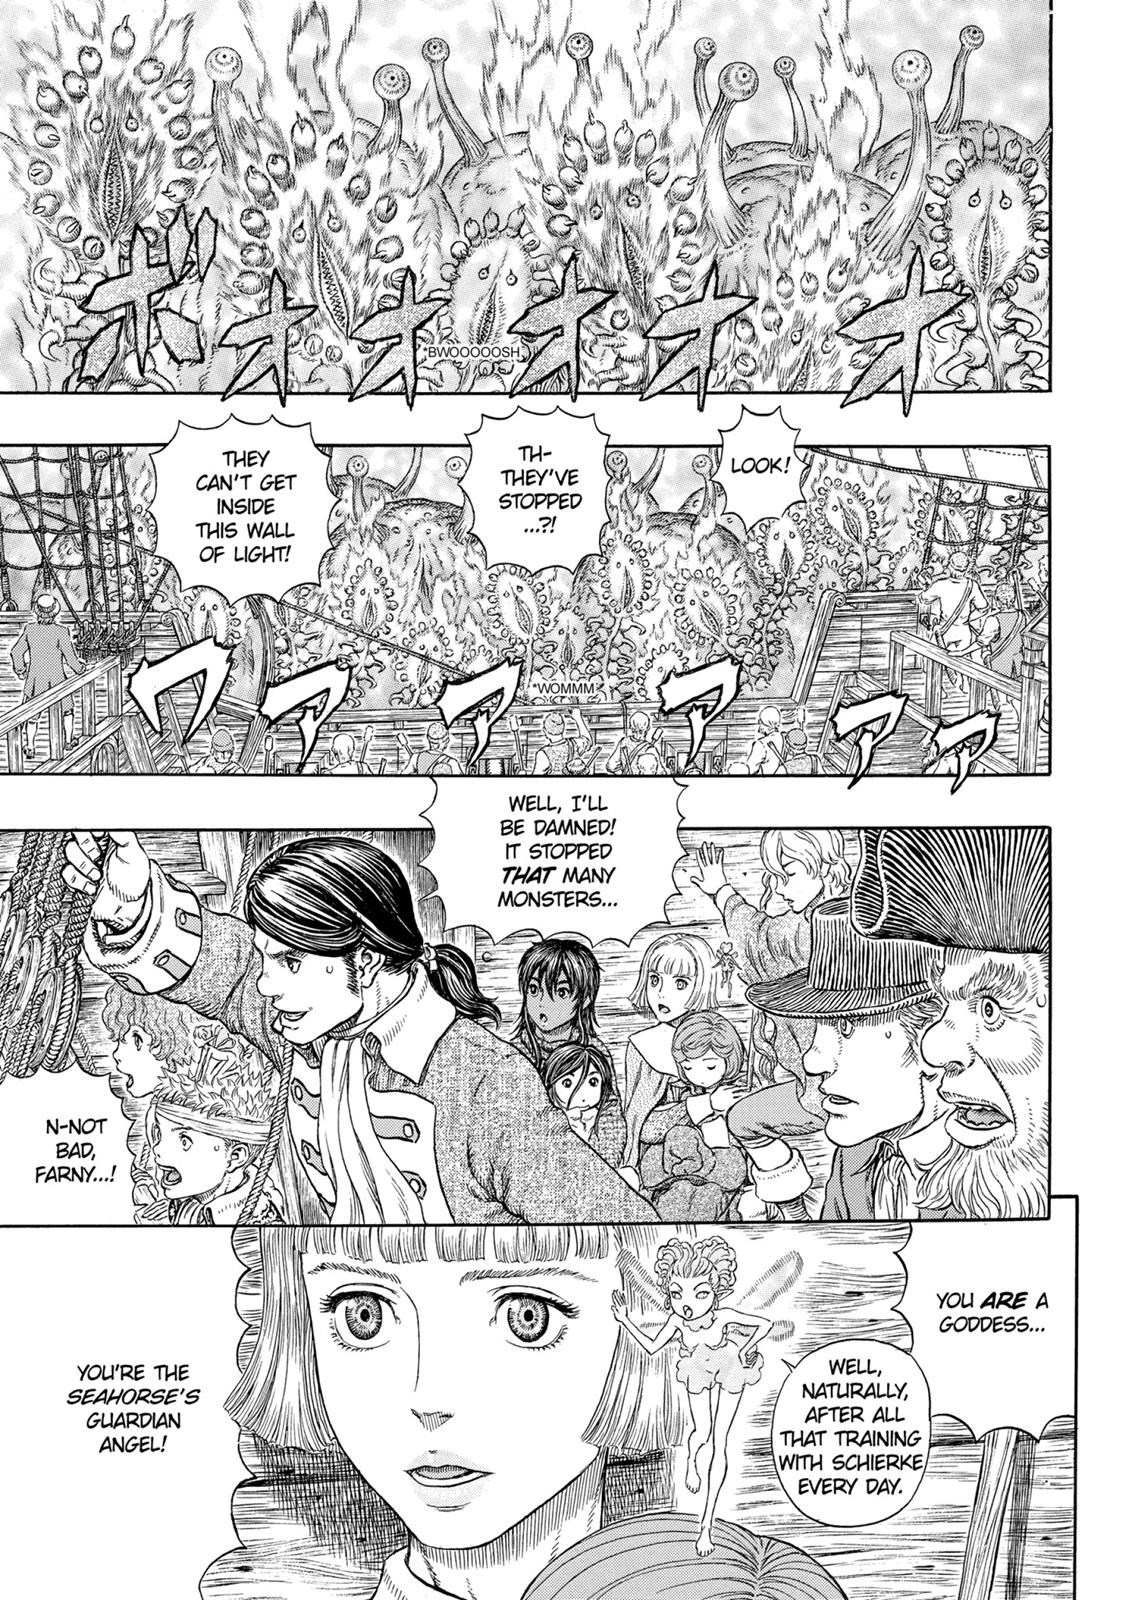 Berserk Manga Chapter 321 image 02